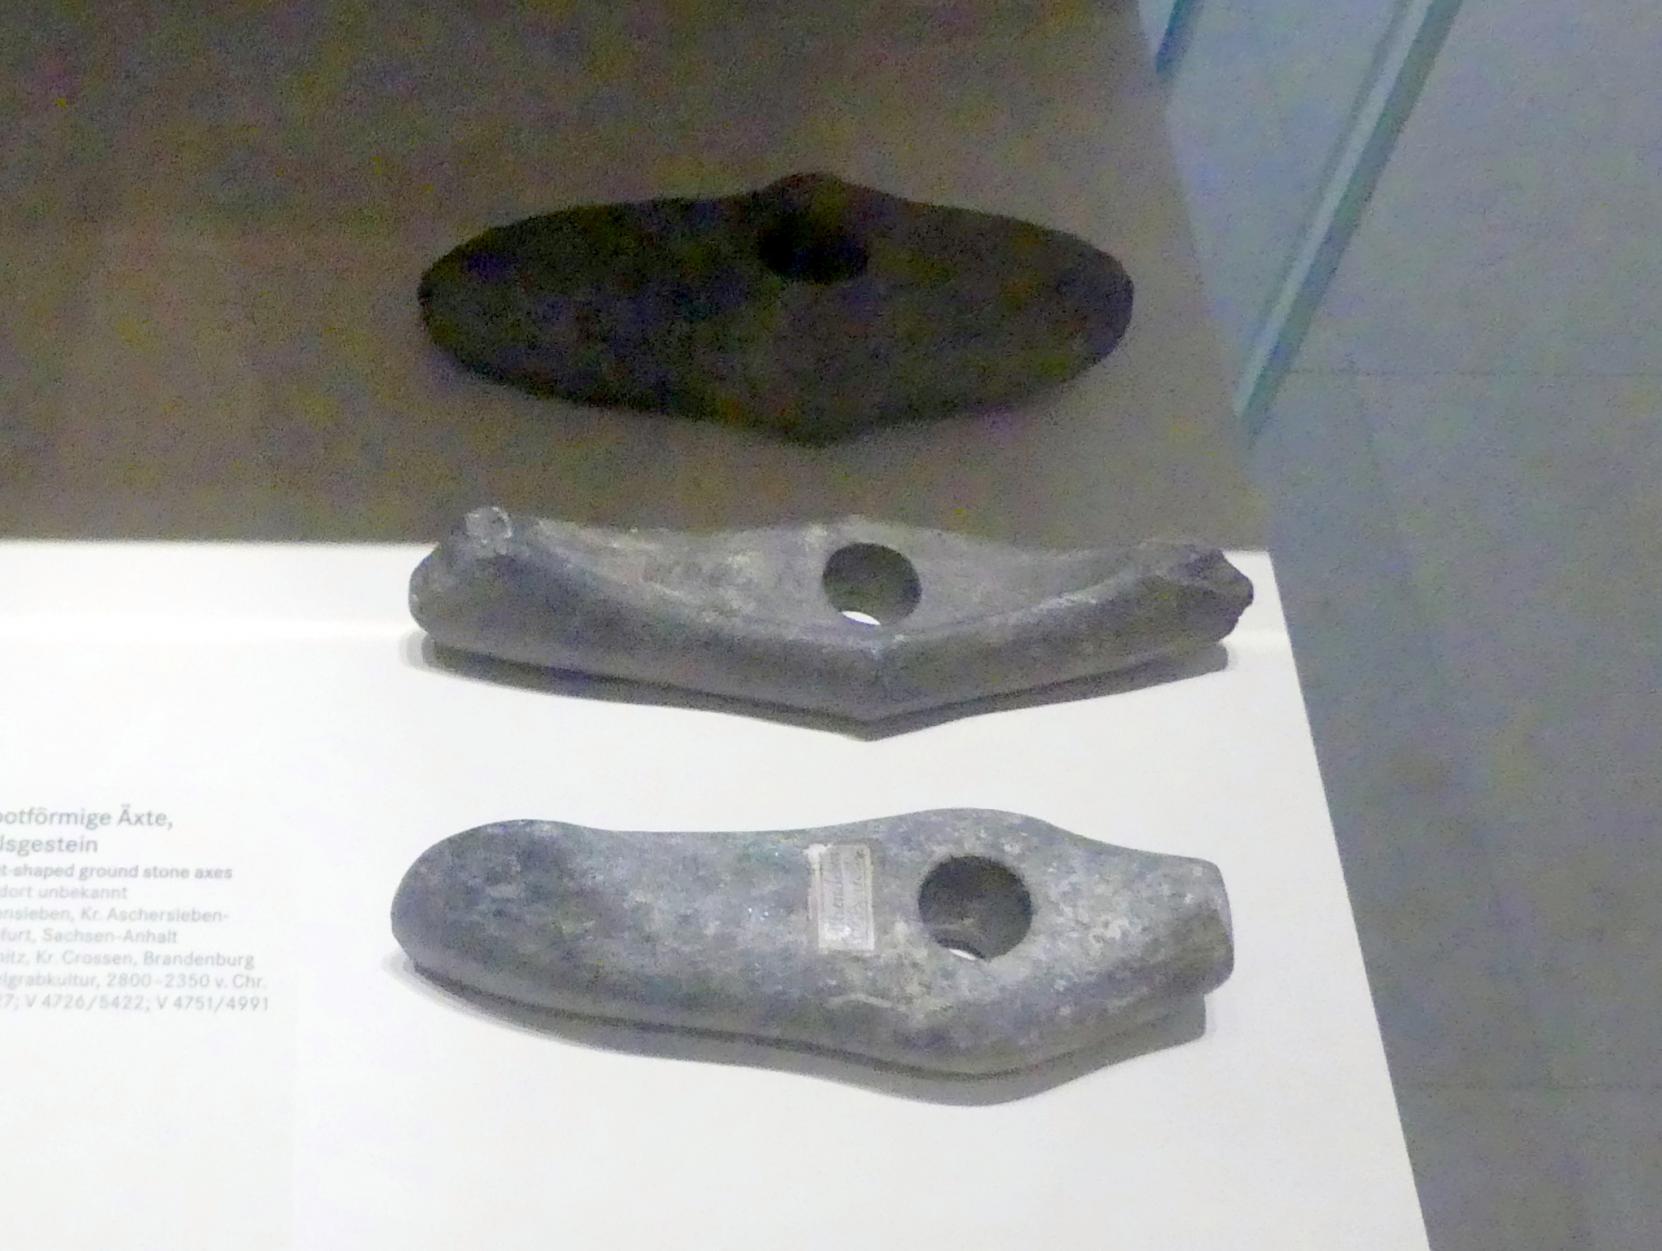 Bootförmige Axt, Nordisches Neolithikum, 4400 - 2350 v. Chr., 2800 - 2350 v. Chr., Bild 1/2